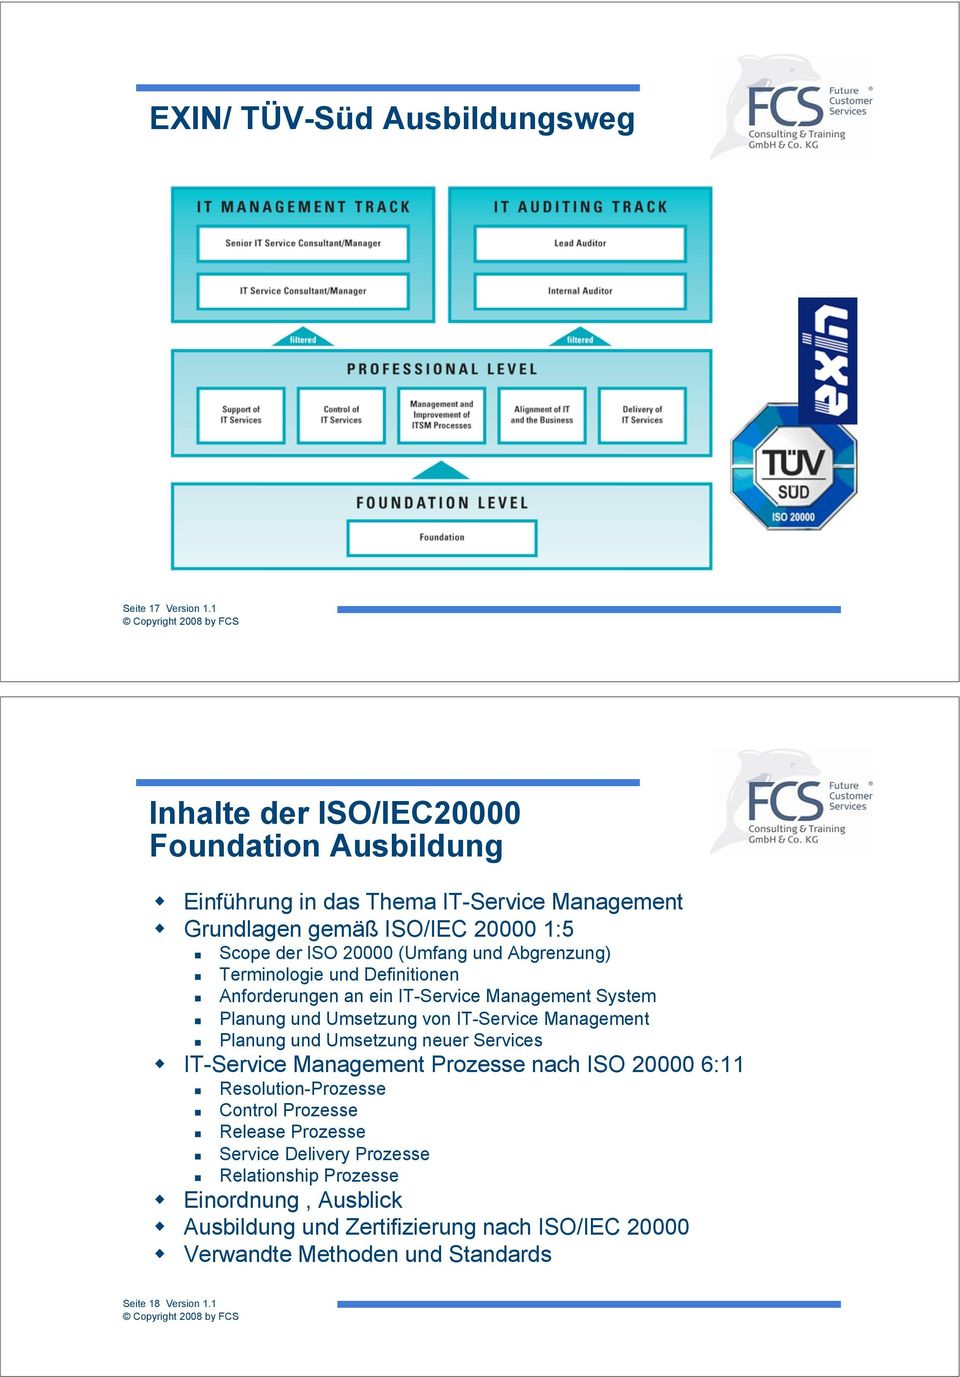 Planung und Umsetzung von IT-Service Management "! Planung und Umsetzung neuer Services!! IT-Service Management Prozesse nach ISO 20000 6:11 "! Resolution-Prozesse "!